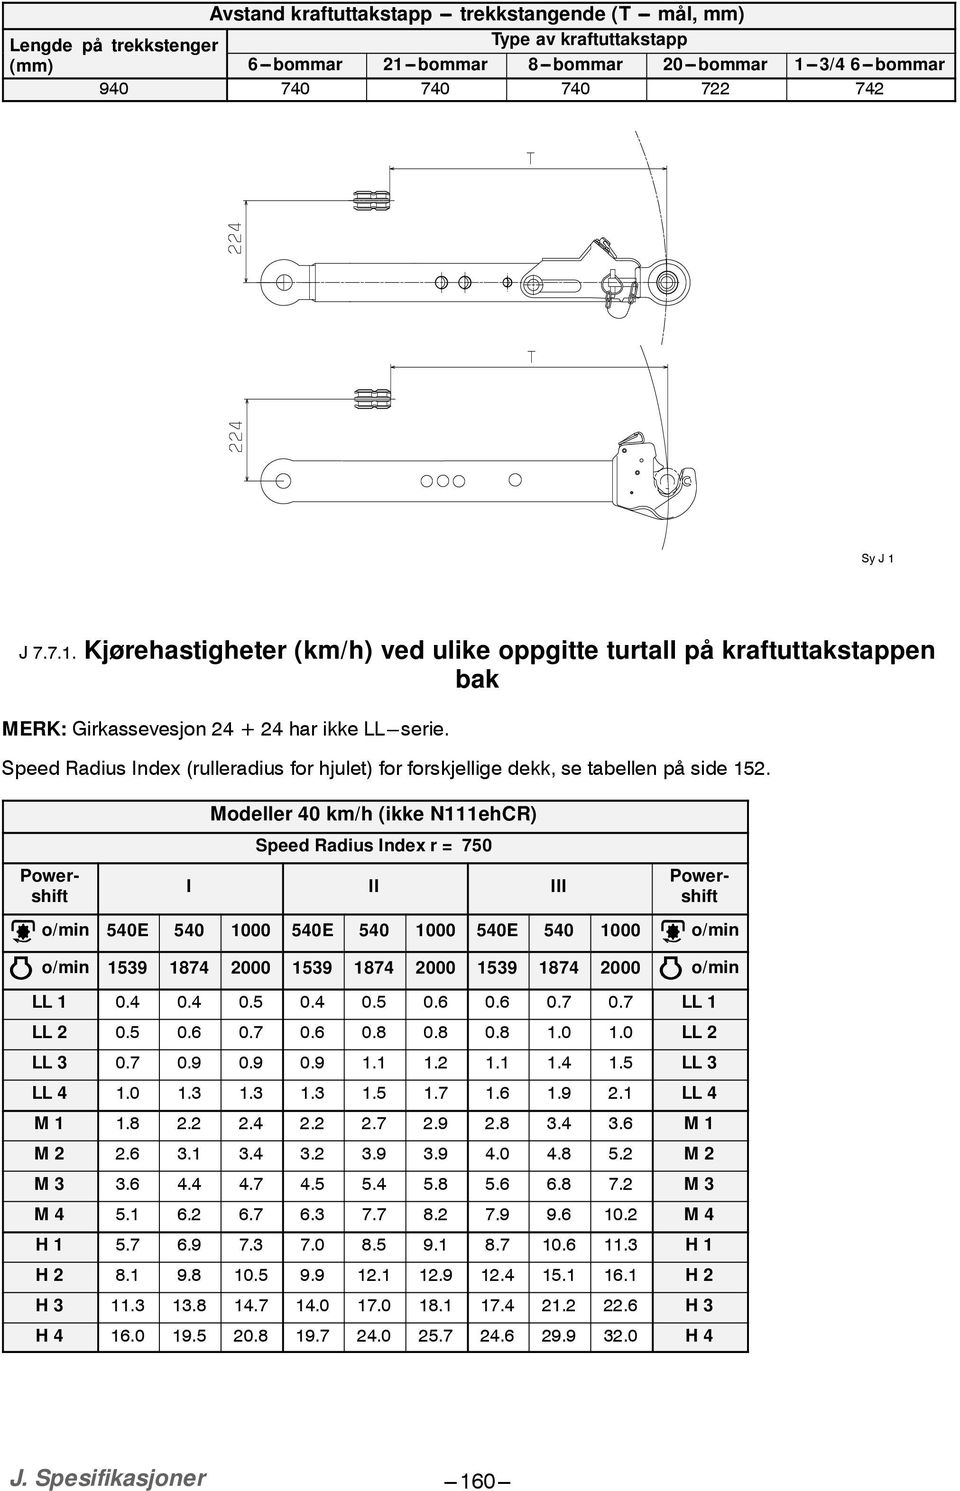 Speed Radius Index (rulleradius for hjulet) for forskjellige dekk, se tabellen på side 5.